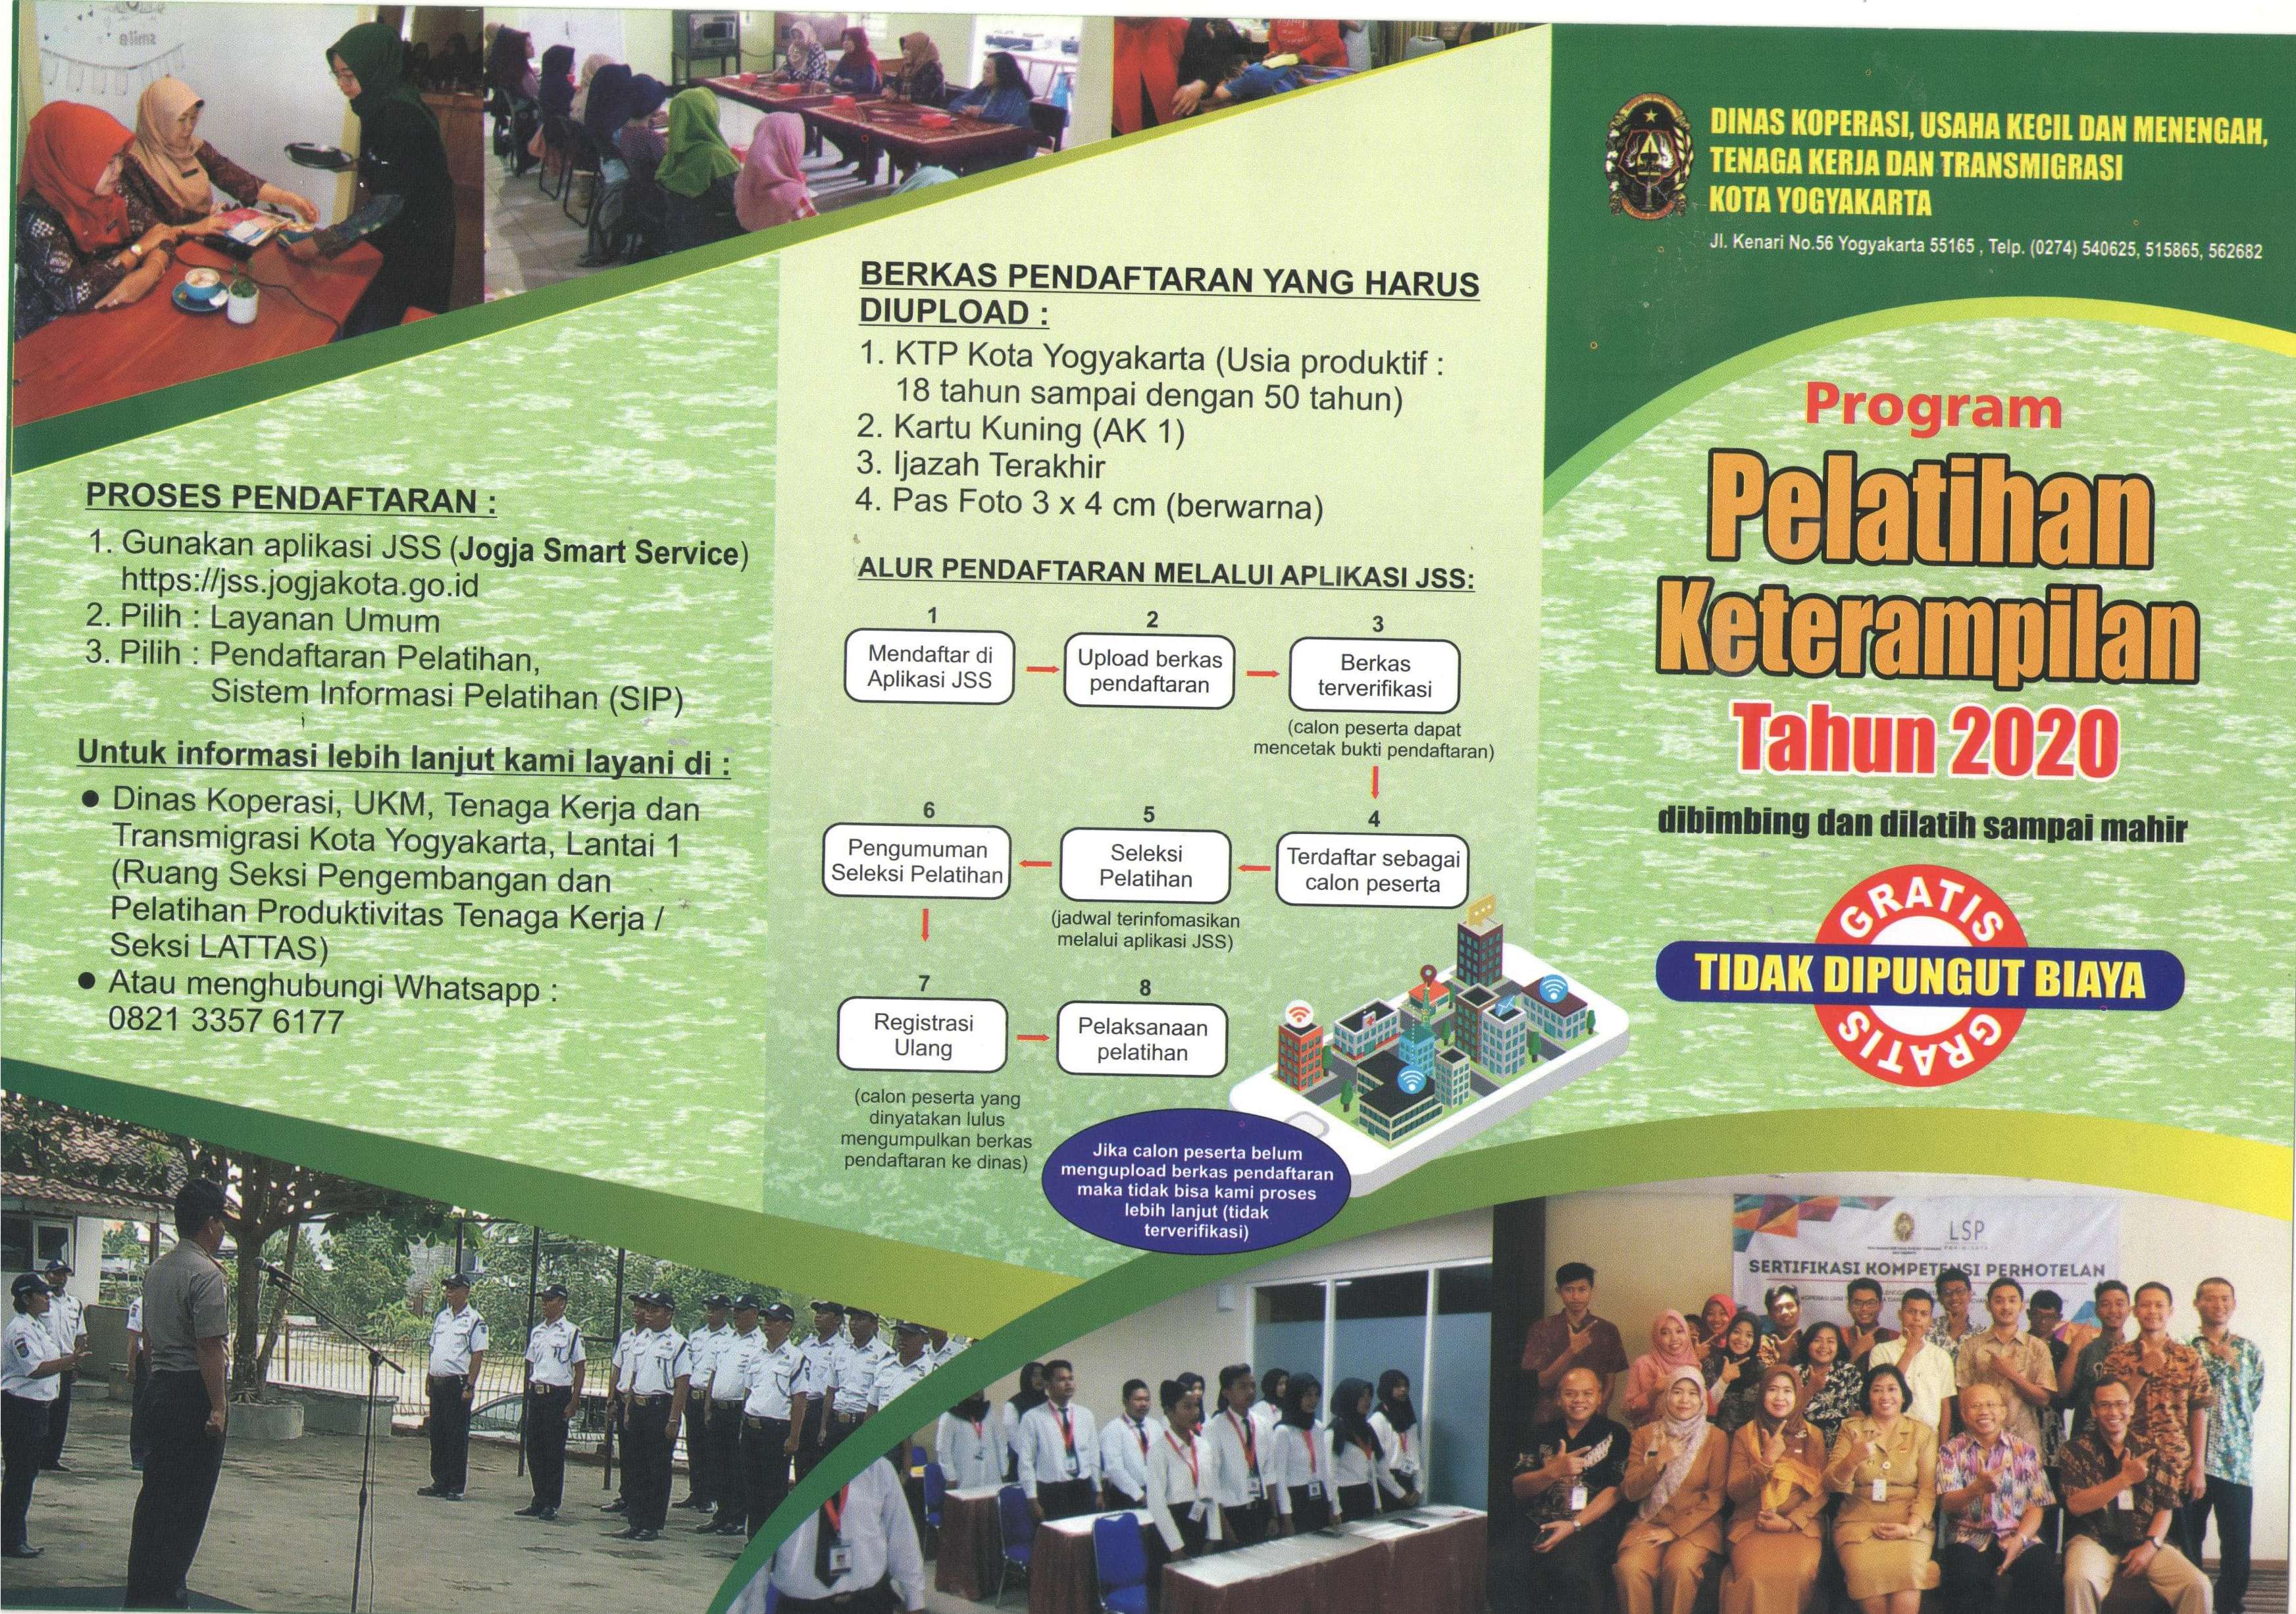 Program Pelatihan Ketrampilan dari Dinas Koperasi, Usaha Kecil dan Menengah, Tenaga Kerja dan Transmigrasi Kota Yogyakarta Tahun 2020